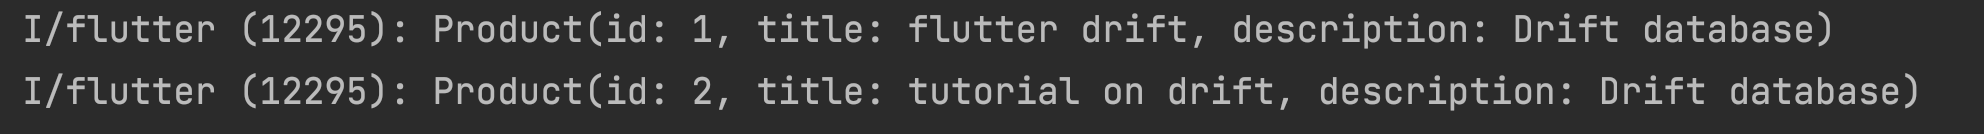 Flutter Drift Database Implementation